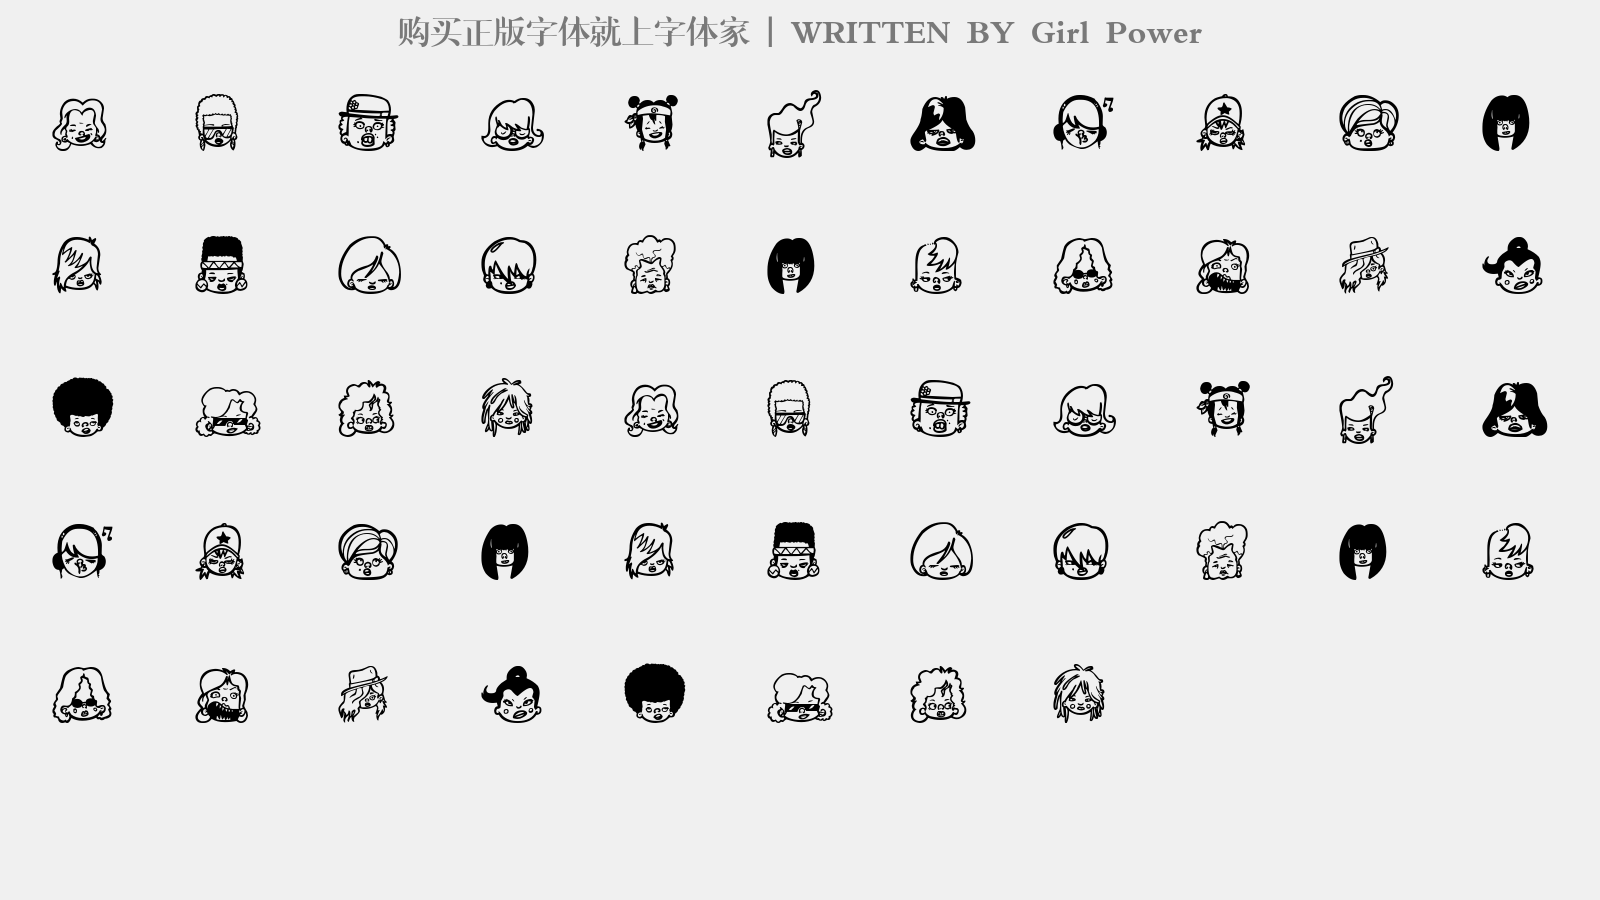 Girl Power - 大写字母/小写字母/数字